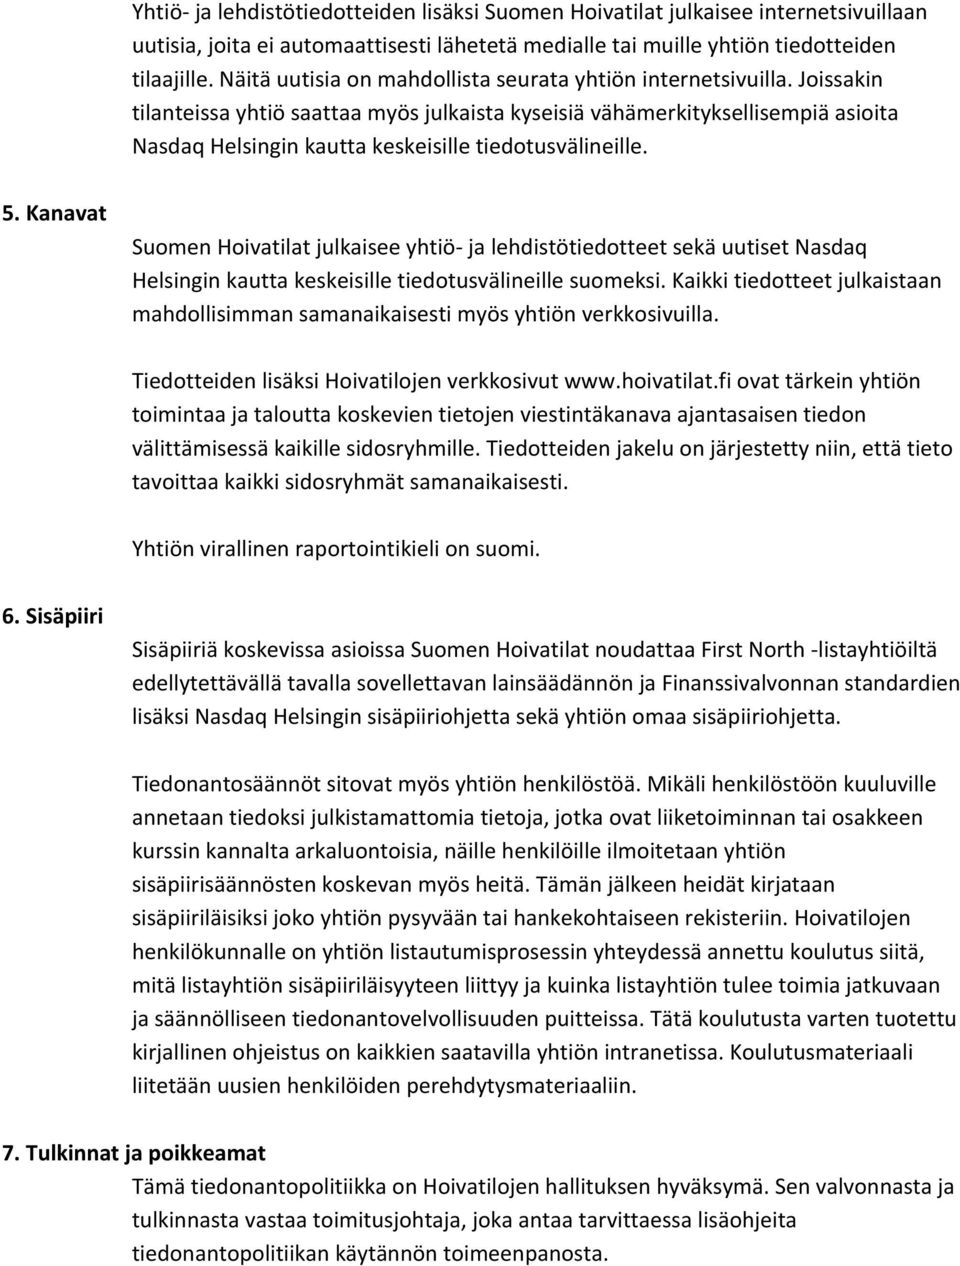 Joissakin tilanteissa yhtiö saattaa myös julkaista kyseisiä vähämerkityksellisempiä asioita Nasdaq Helsingin kautta keskeisille tiedotusvälineille. 5.